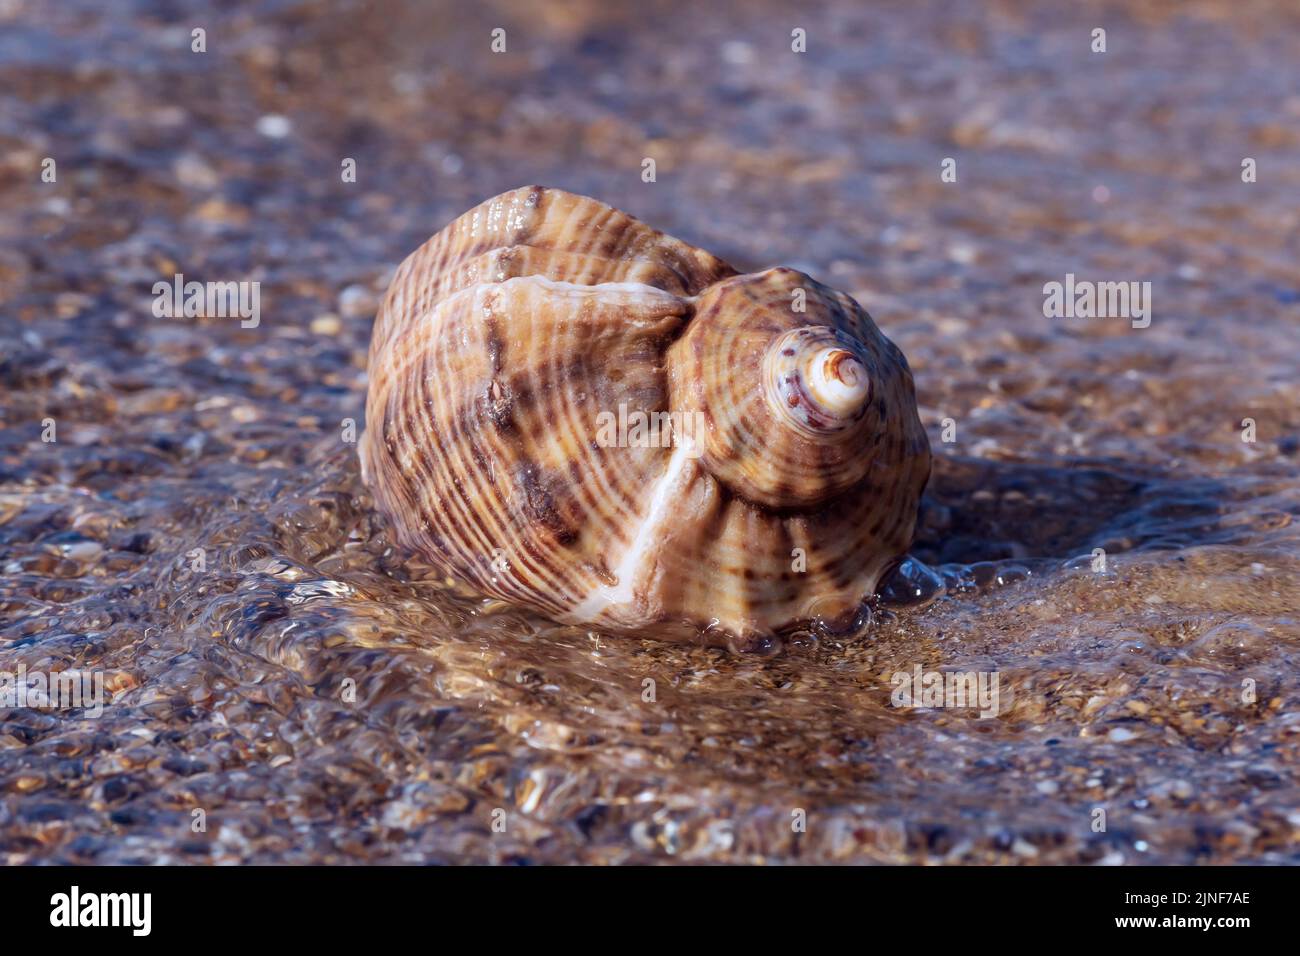 primer plano de la concha tumbada sobre la arena en las olas del mar Foto de stock